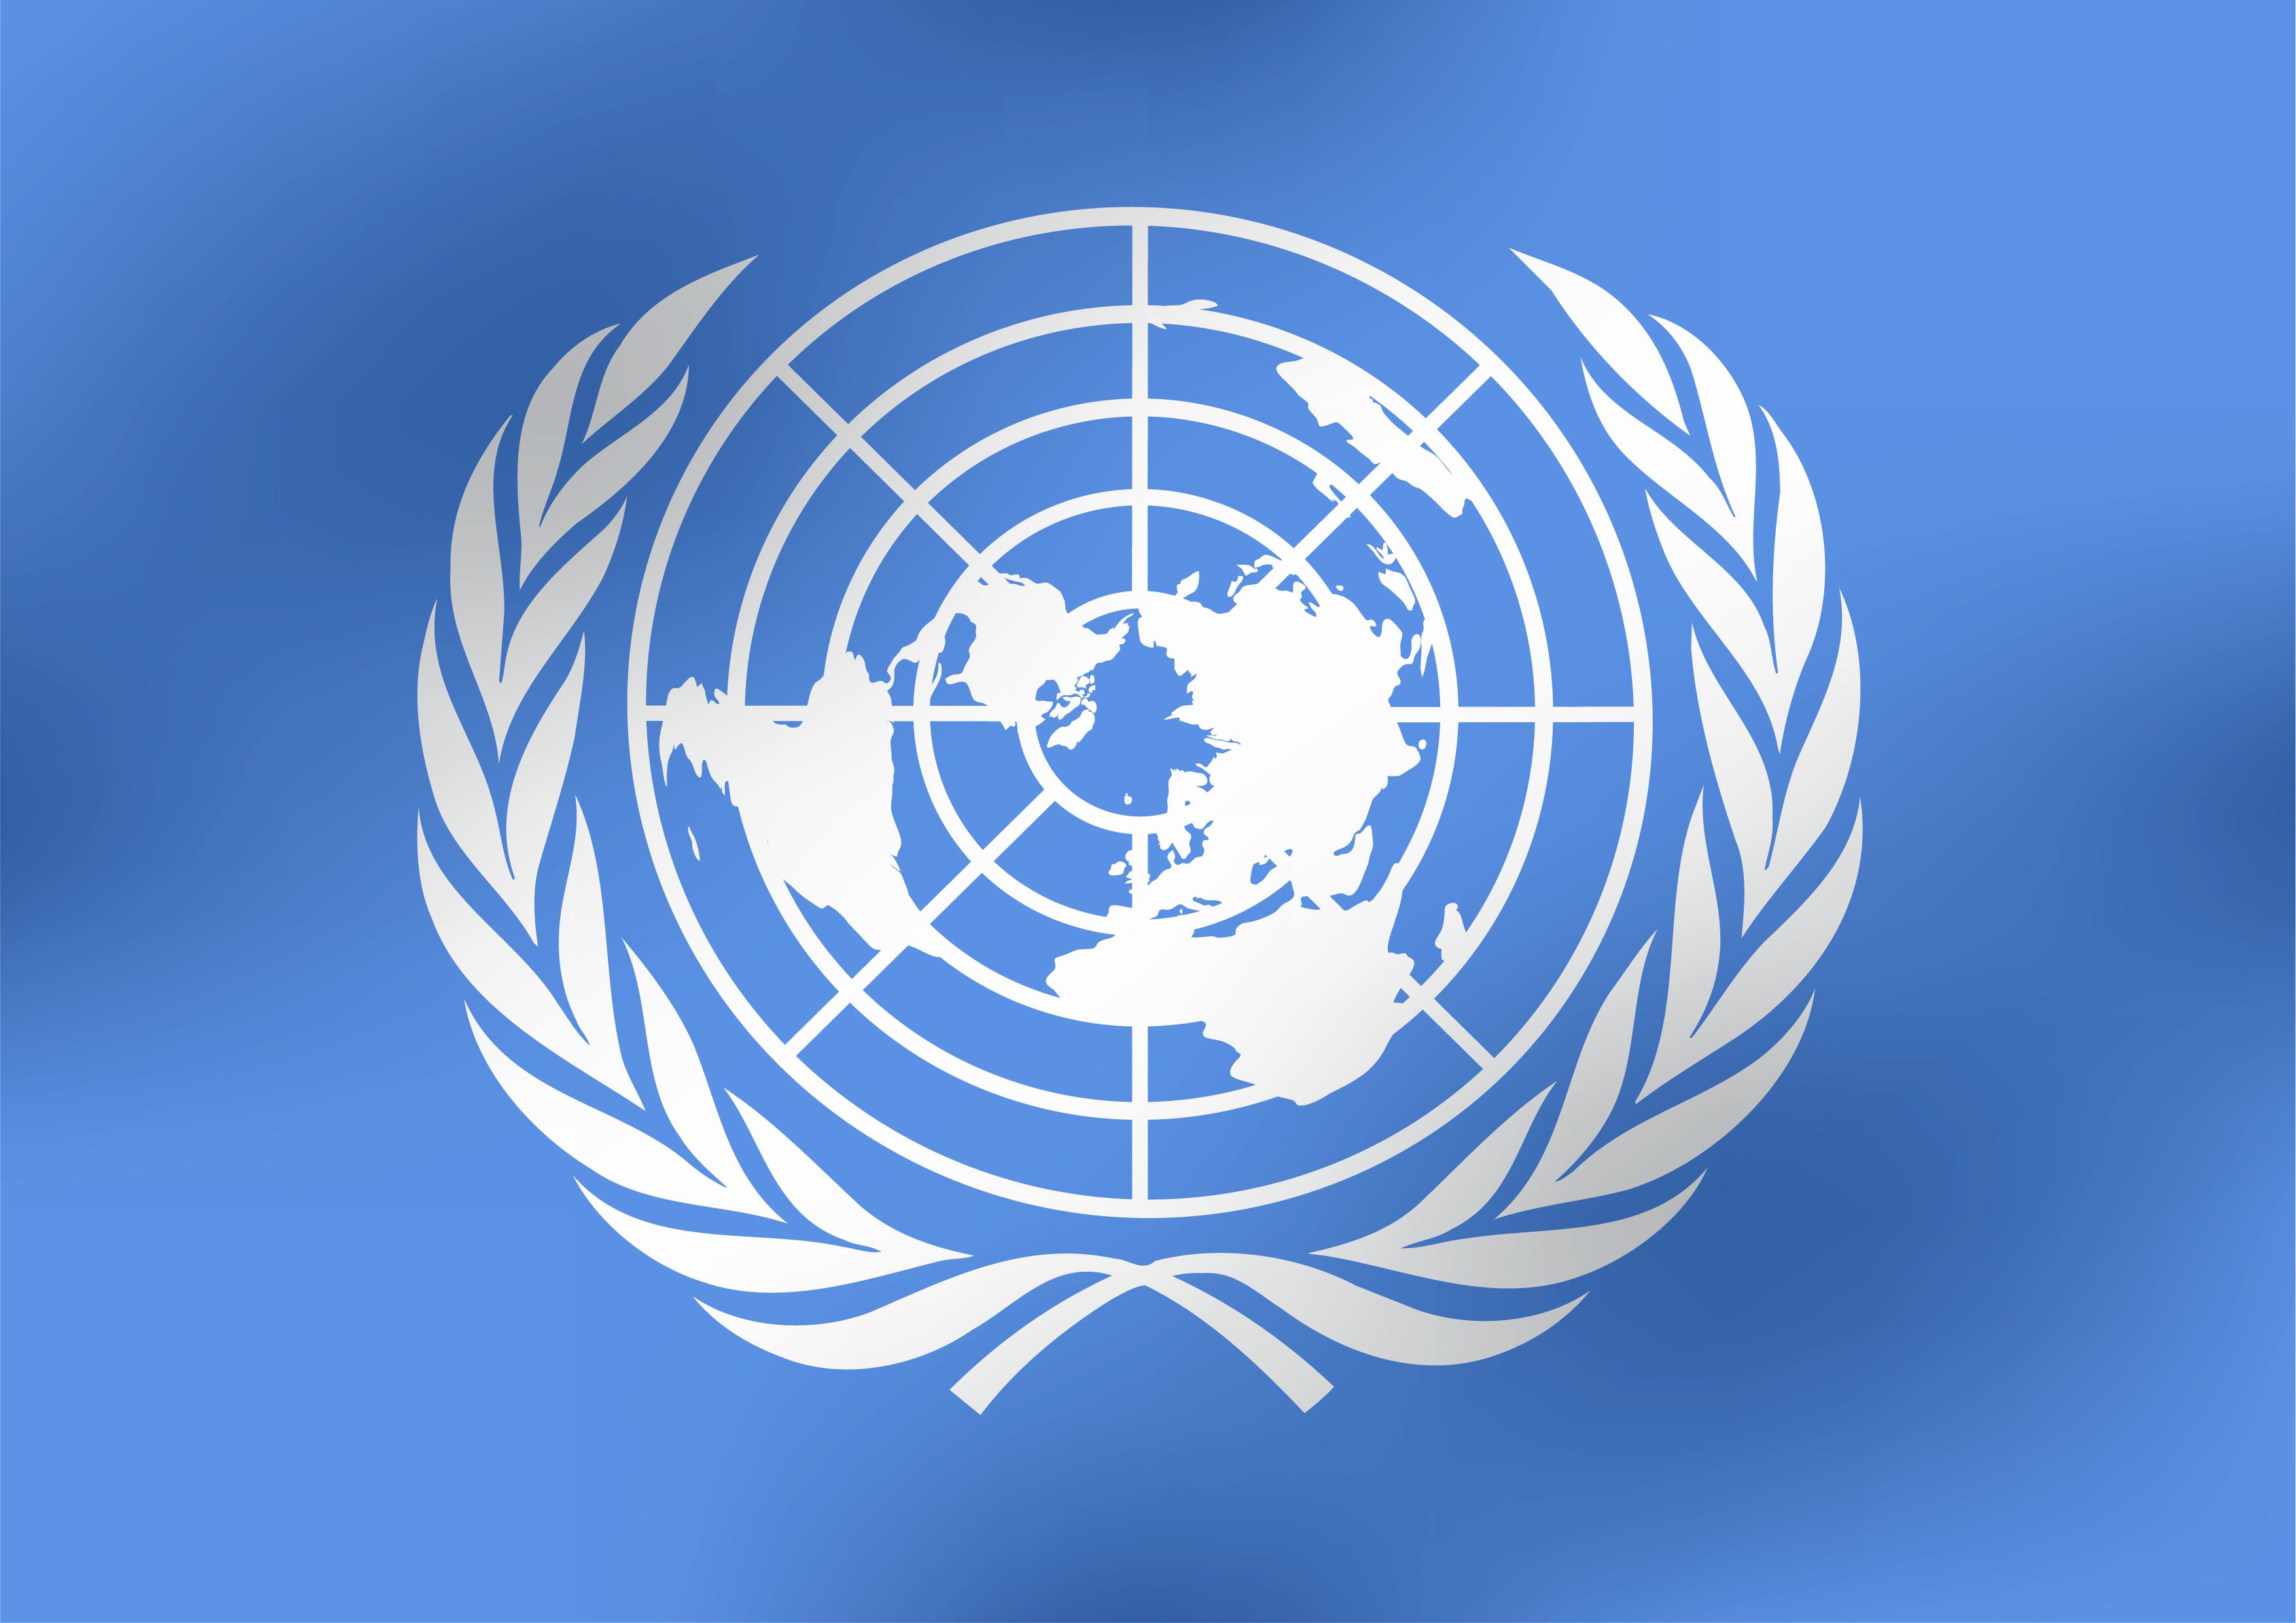 Е оон. Организация Объединенных наций (ООН). Флаг ООН. Воз ООН. Логотип ООН.